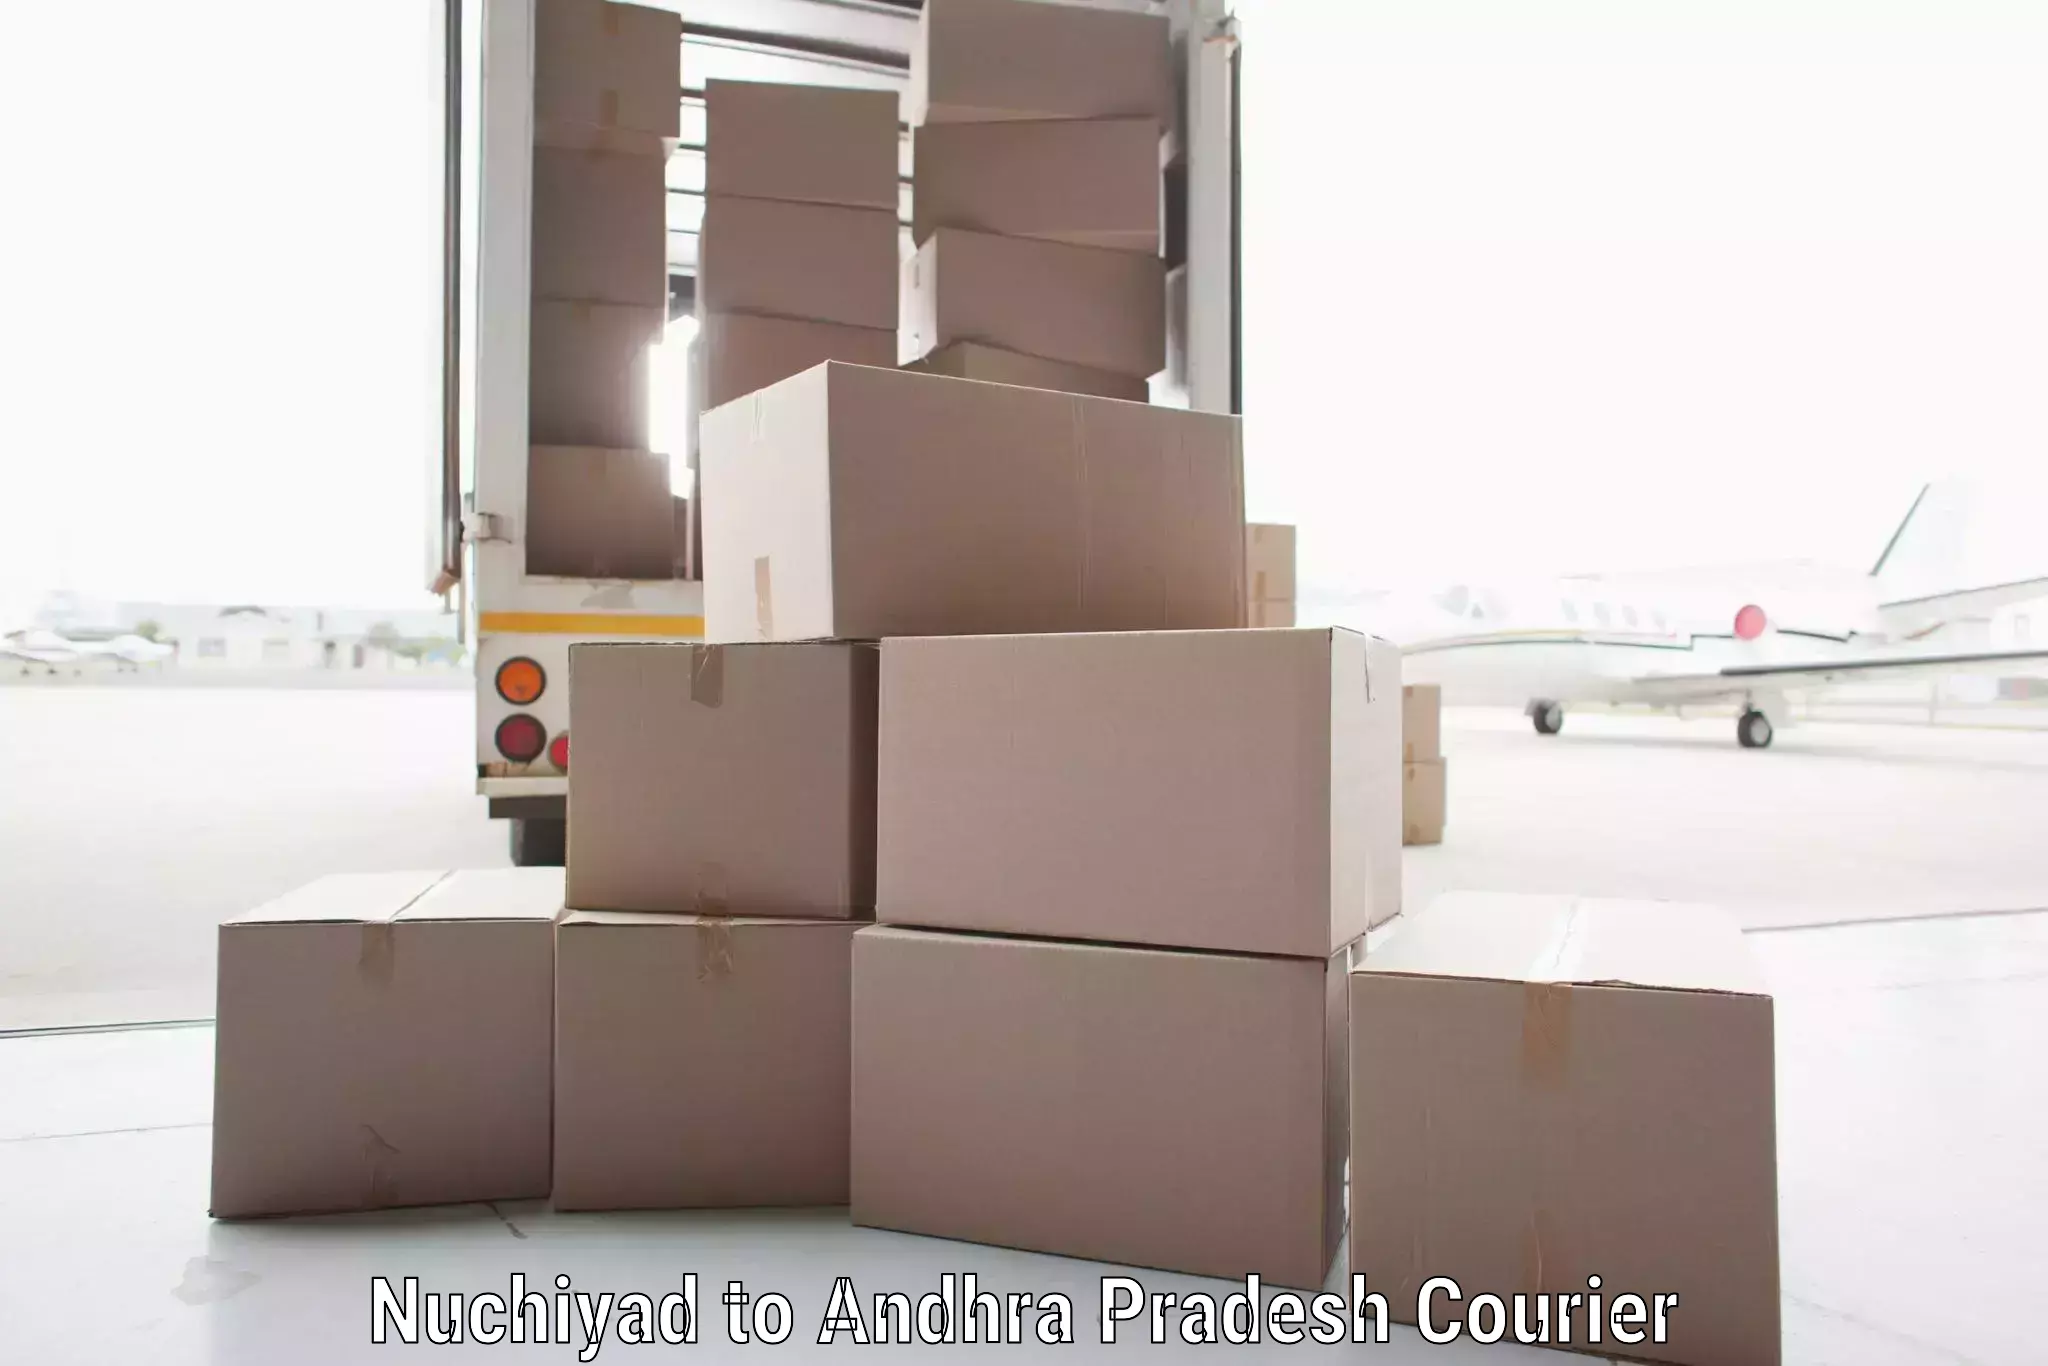 High-capacity shipping options Nuchiyad to Andhra Pradesh